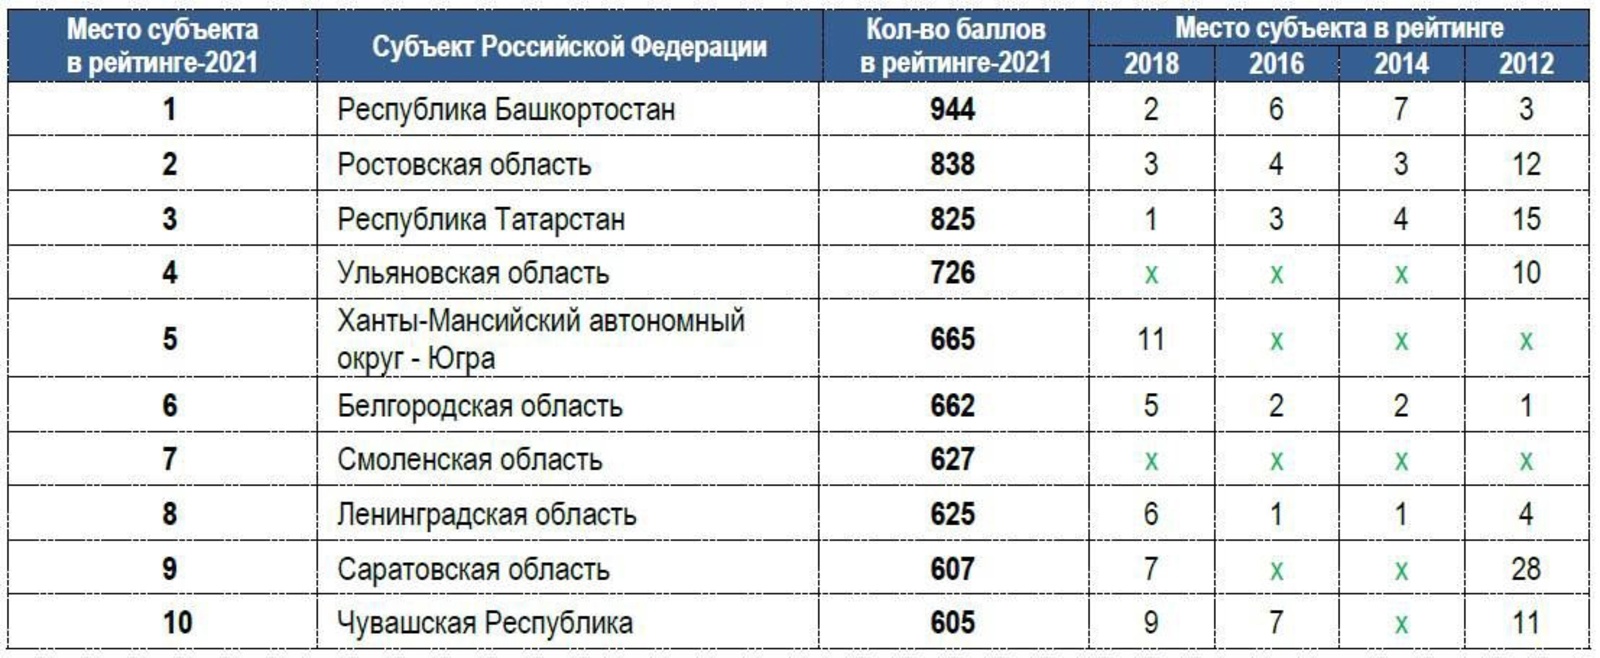 Республика Башкортостан по уровню защищенности потребителей стала первой в рейтинге субъектов Российской Федерации